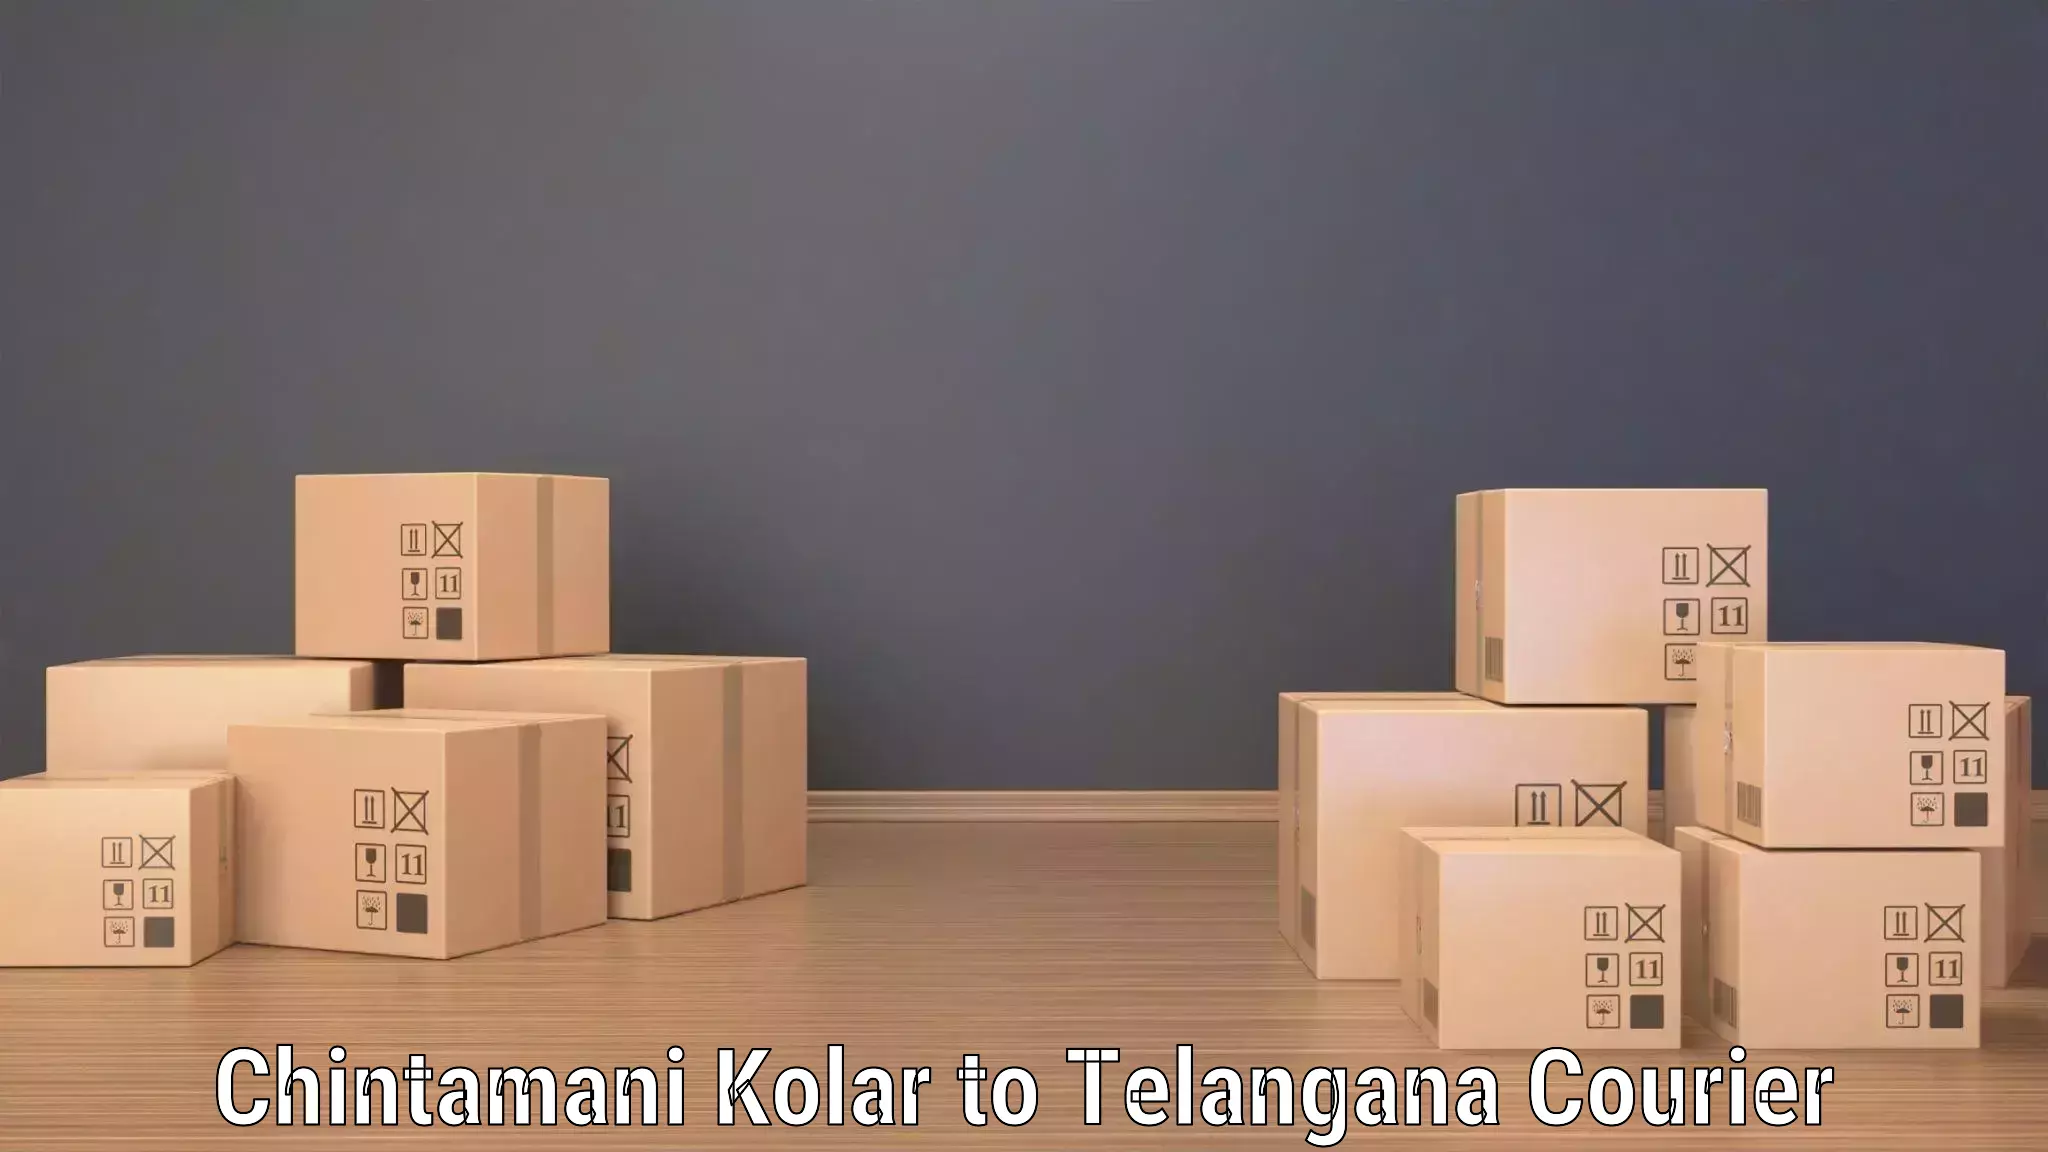 Expedited shipping methods in Chintamani Kolar to Telangana